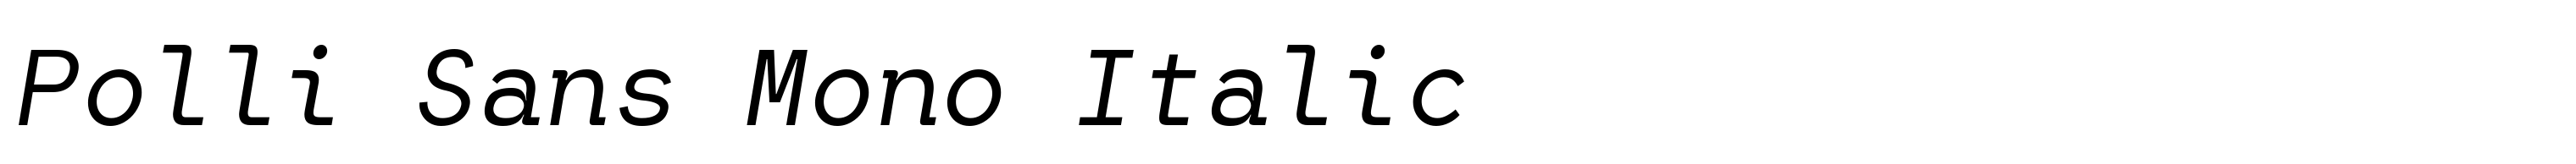 Polli Sans Mono Italic